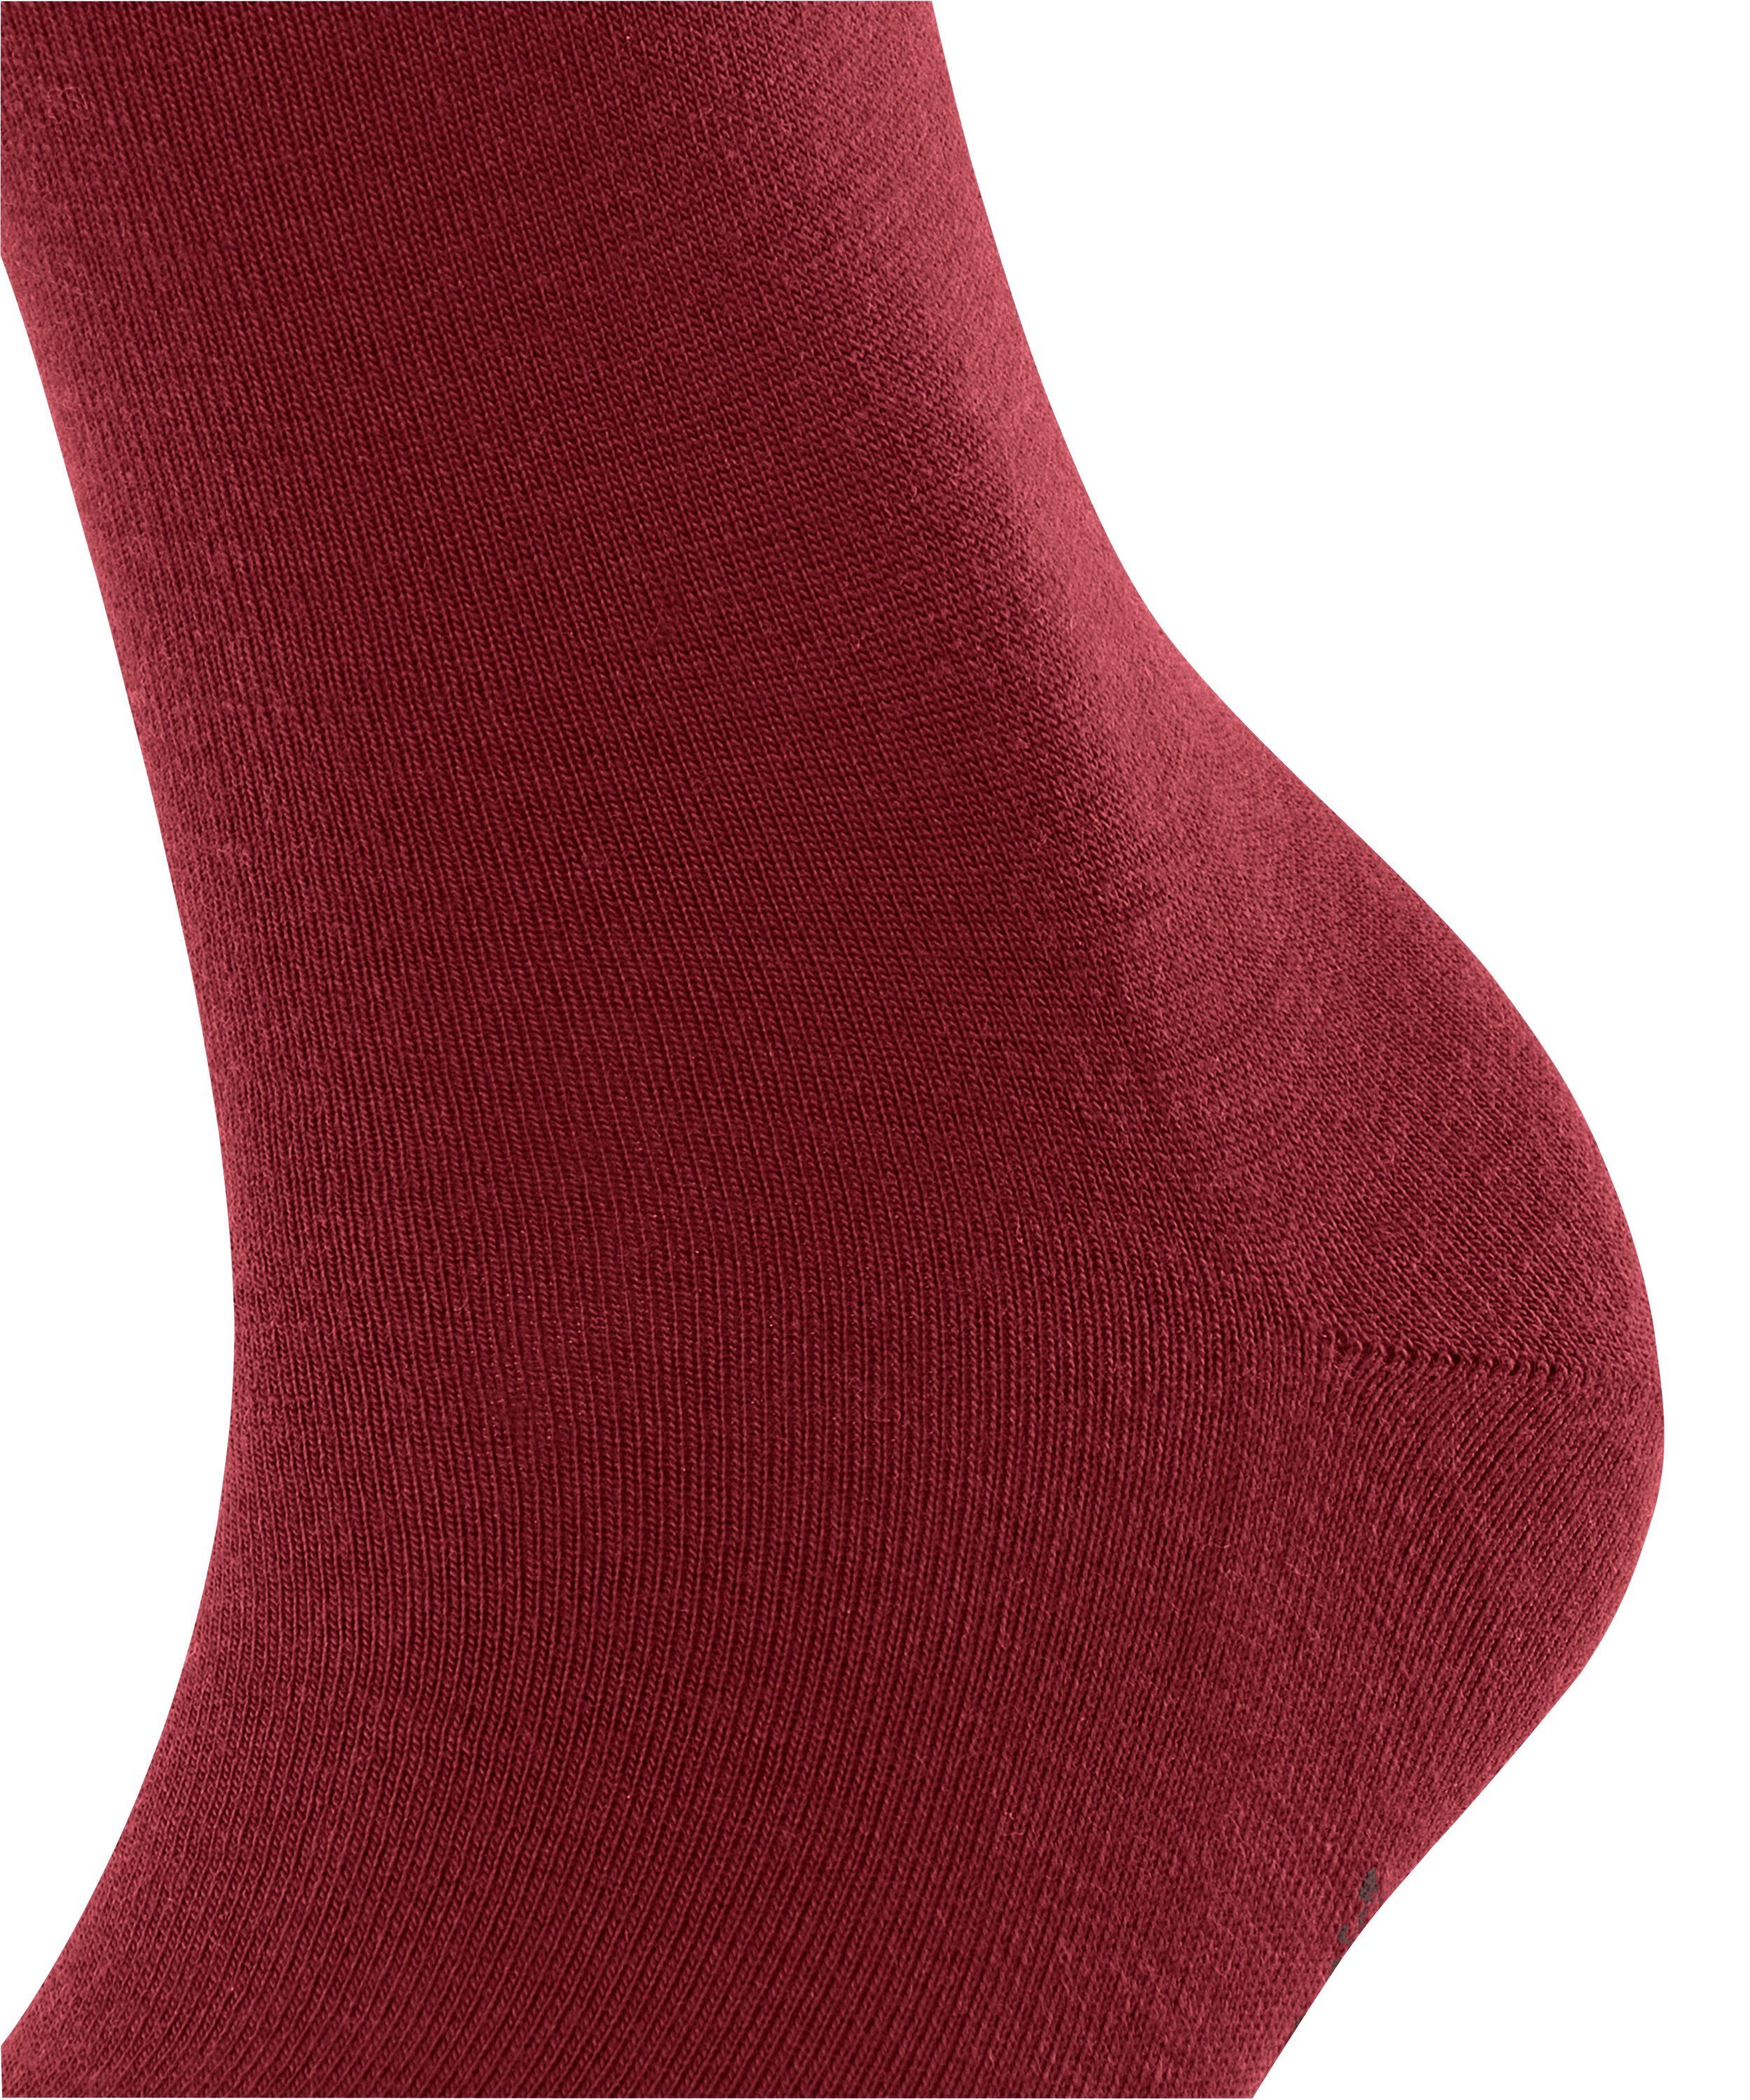 FALKE Socken Softmerino (1-Paar) (8228) scarlet